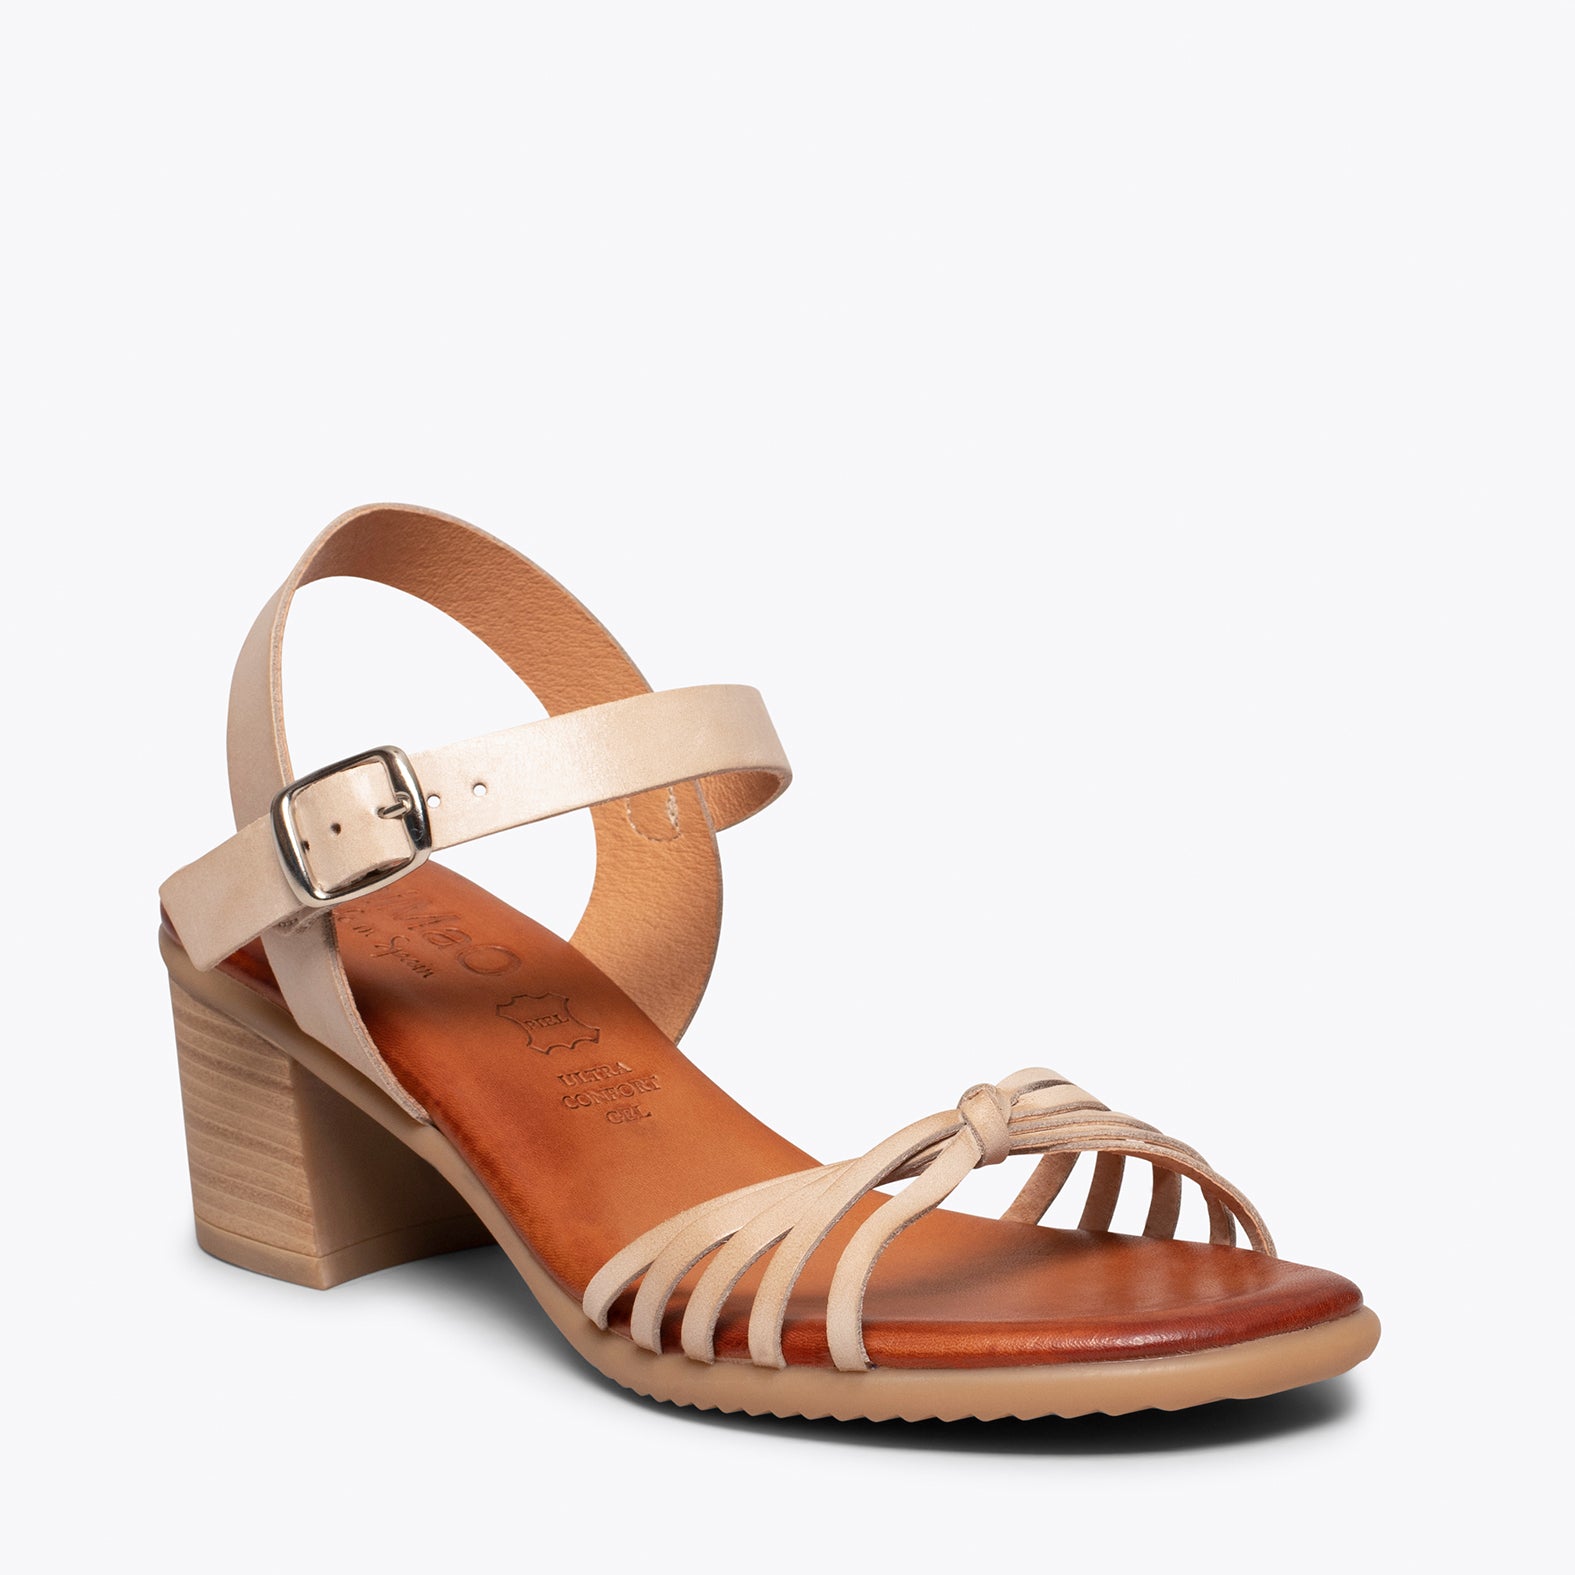 LOTO – BEIGE sandals with comfortable block heel